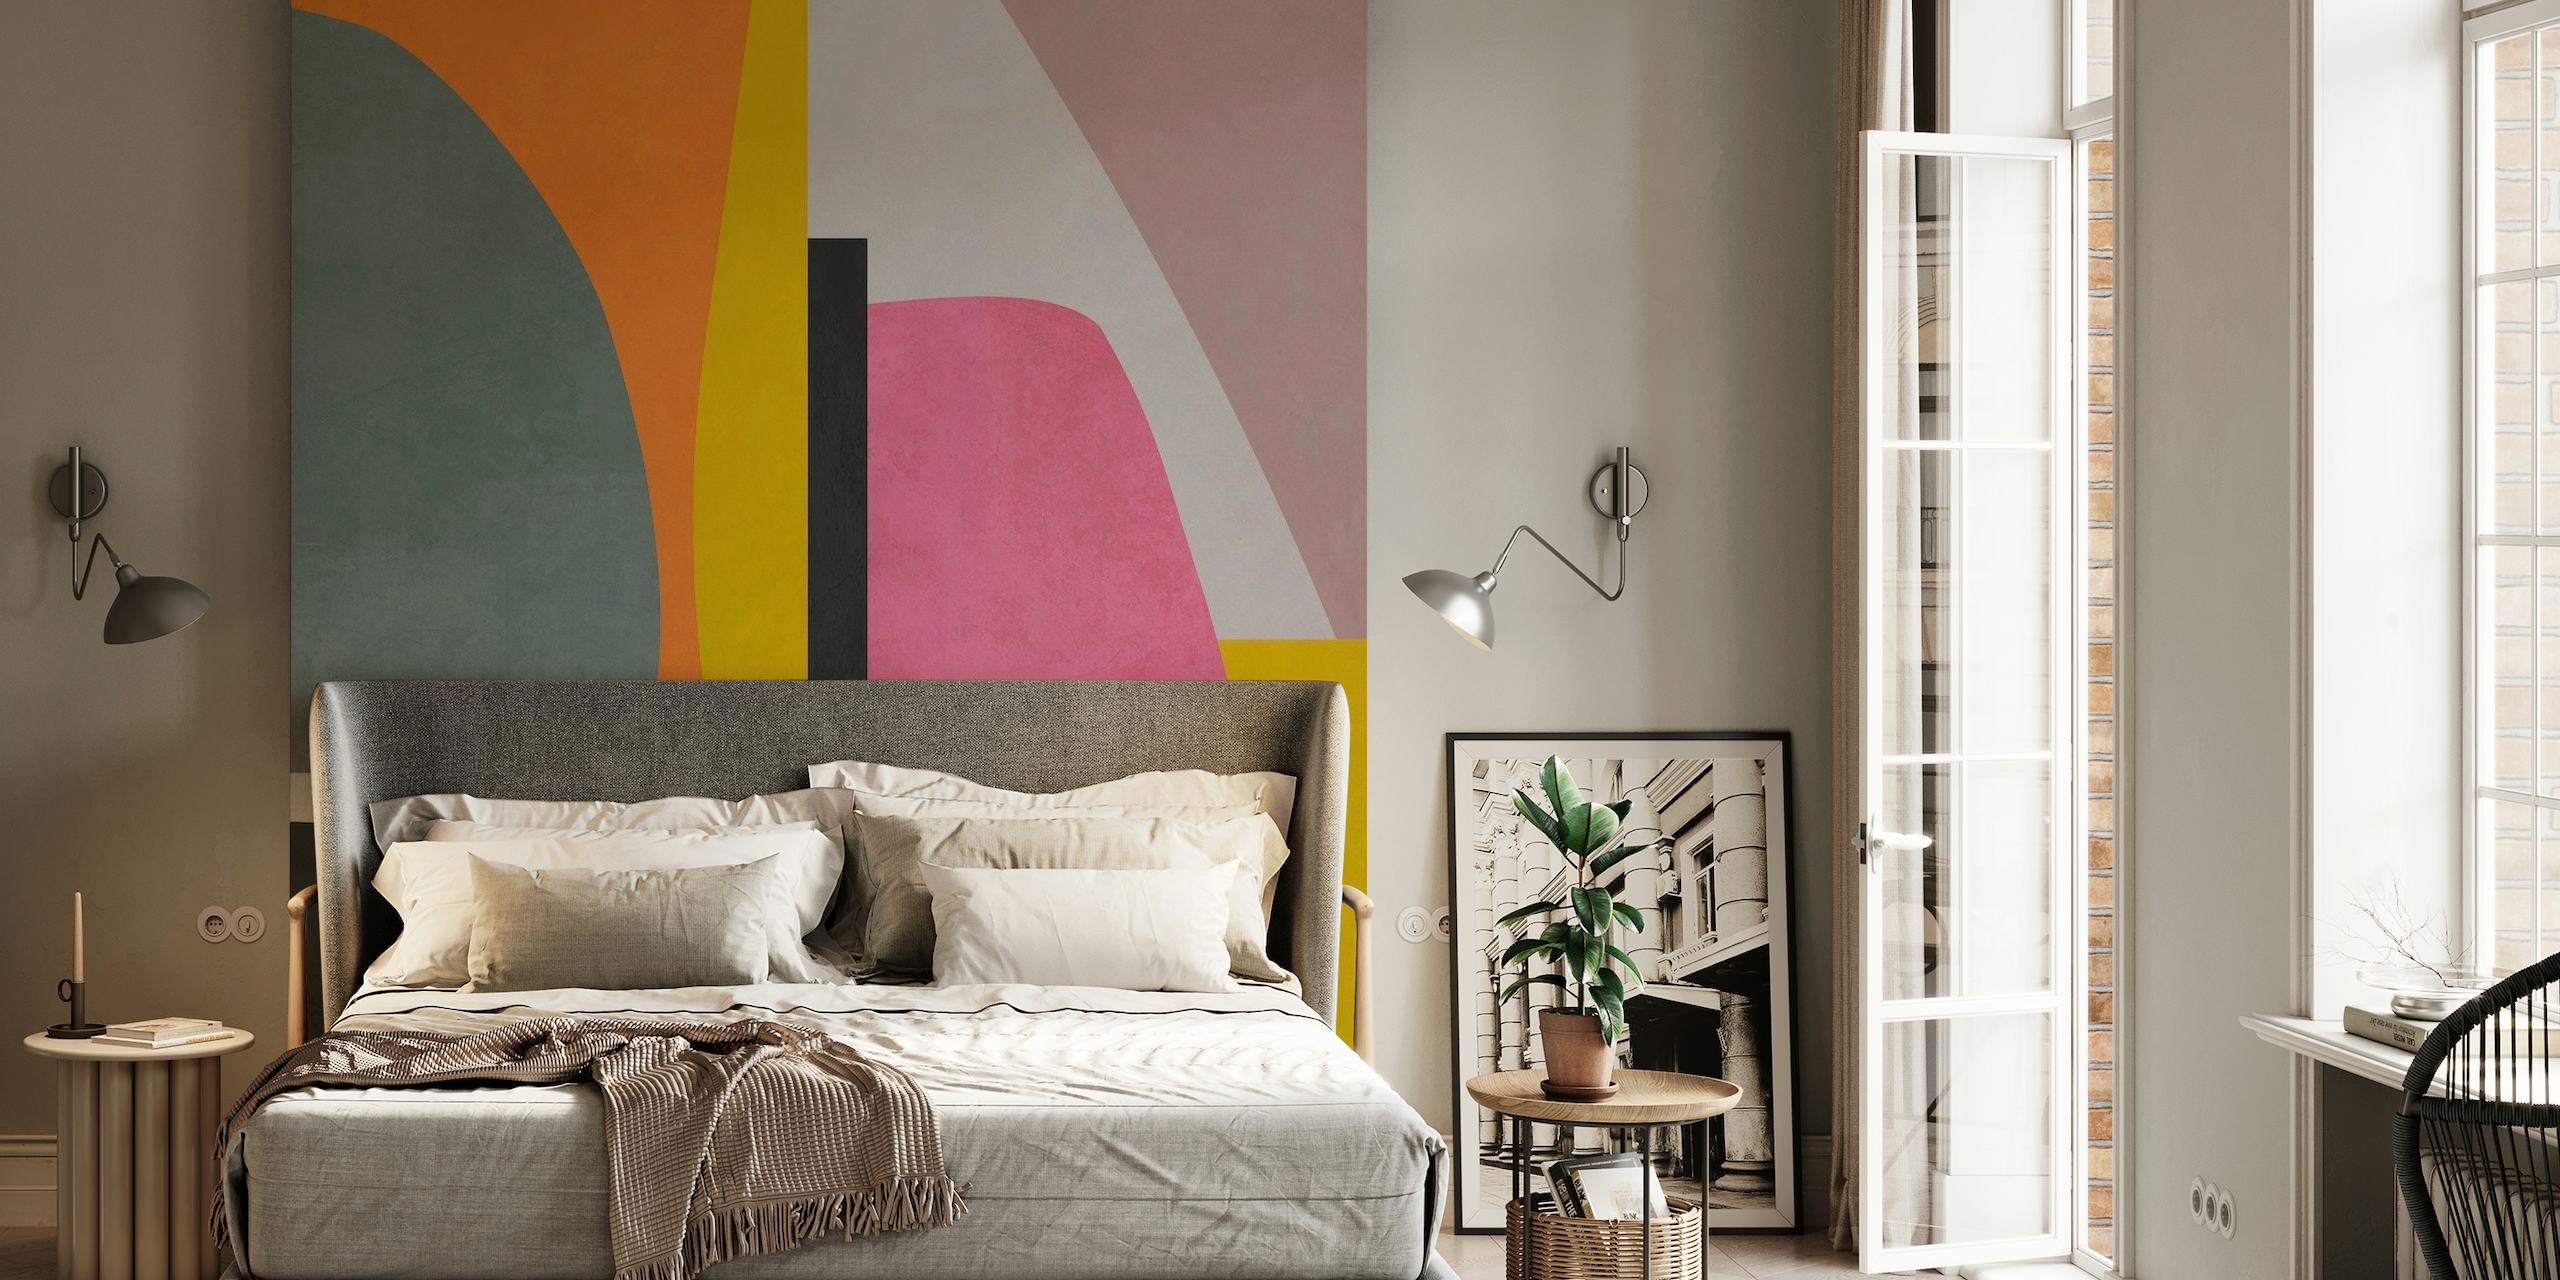 Zidni mural s apstraktnim geometrijskim oblicima razigranih boja na happywall.com